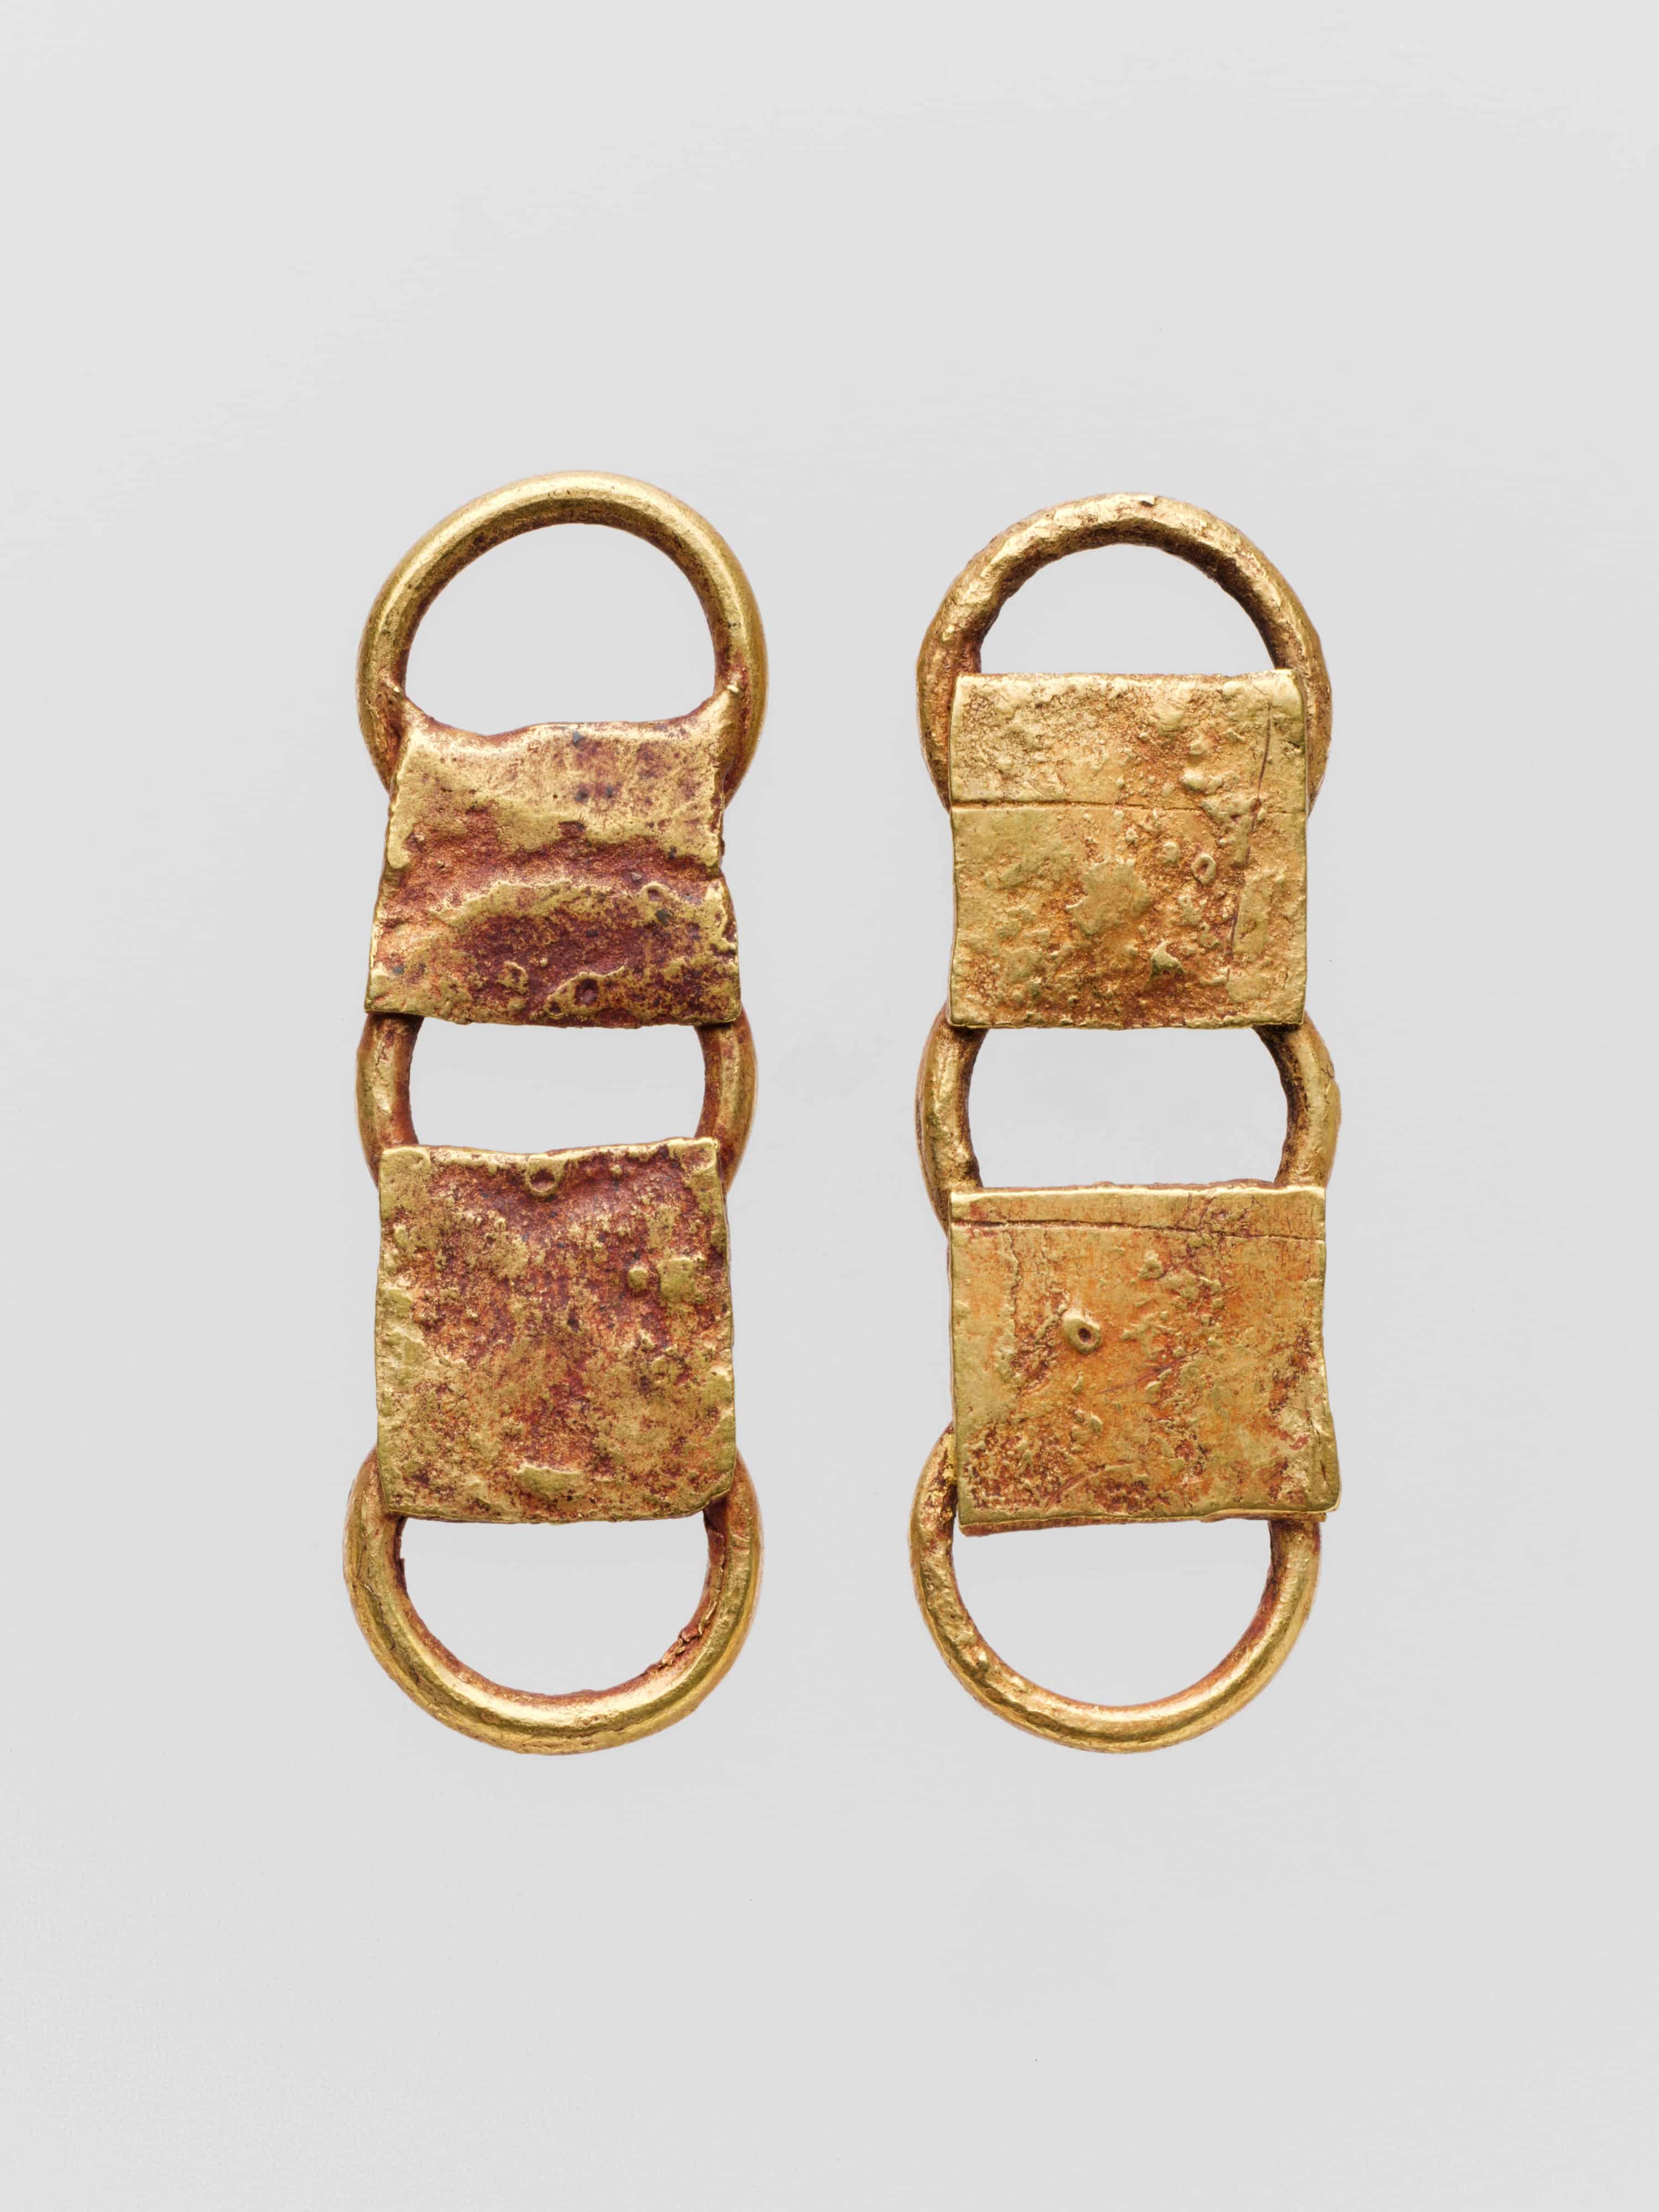 Deux attaches de ceinture romaine en or datées entre le premier siècle avant et le premier siècle de notre ère © MET Museum